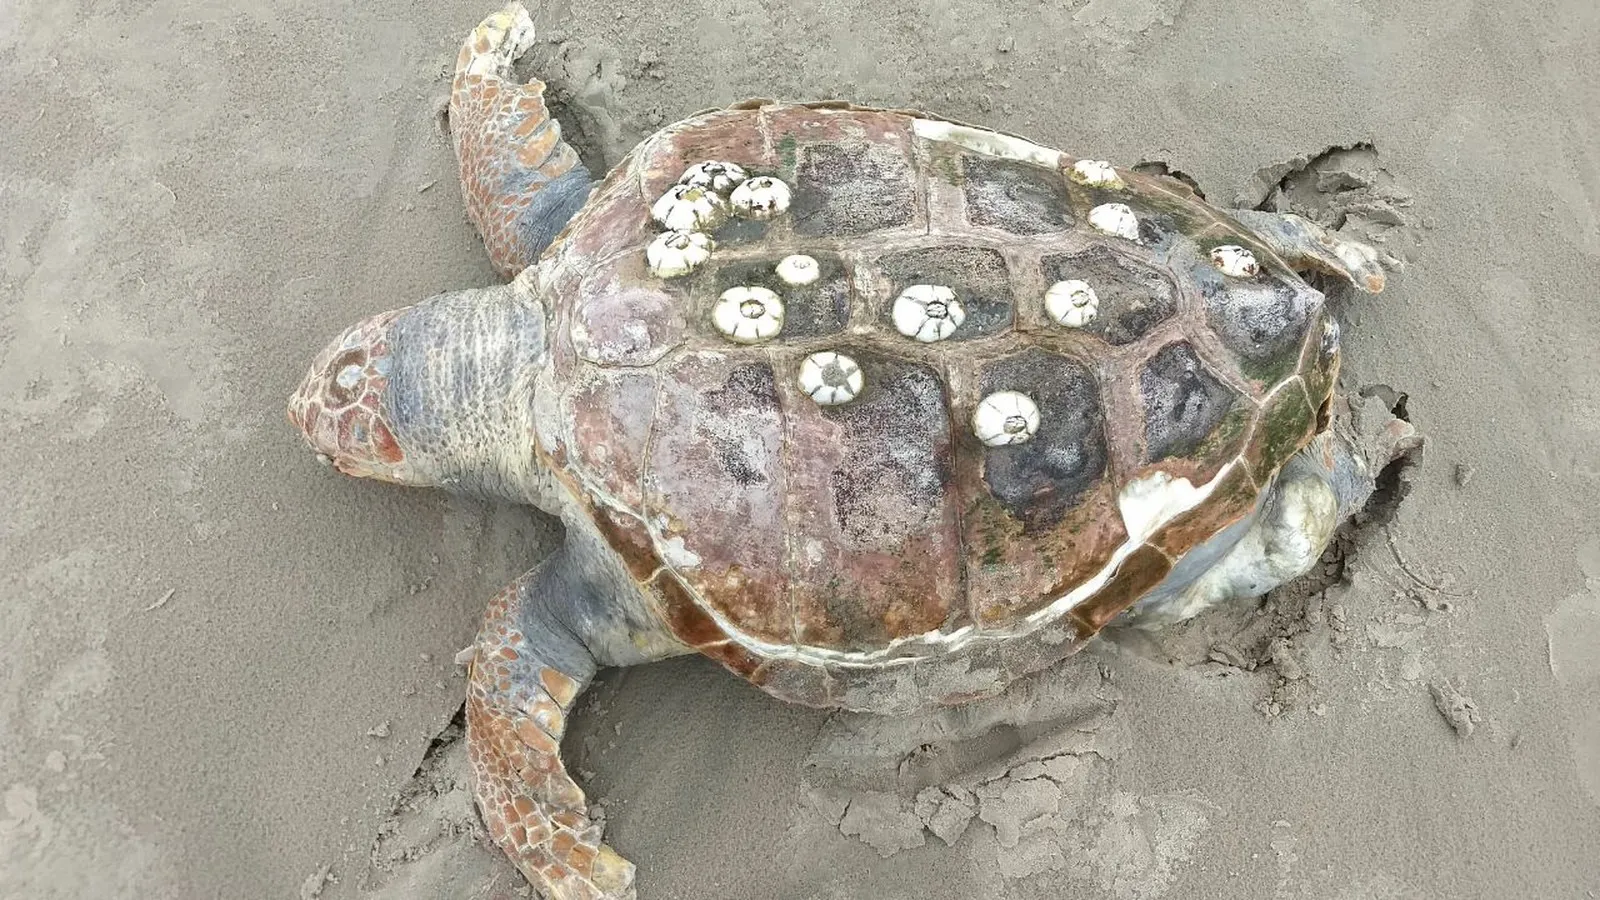 Tartaruga 'cabeçuda' é achada morta em Matinhos